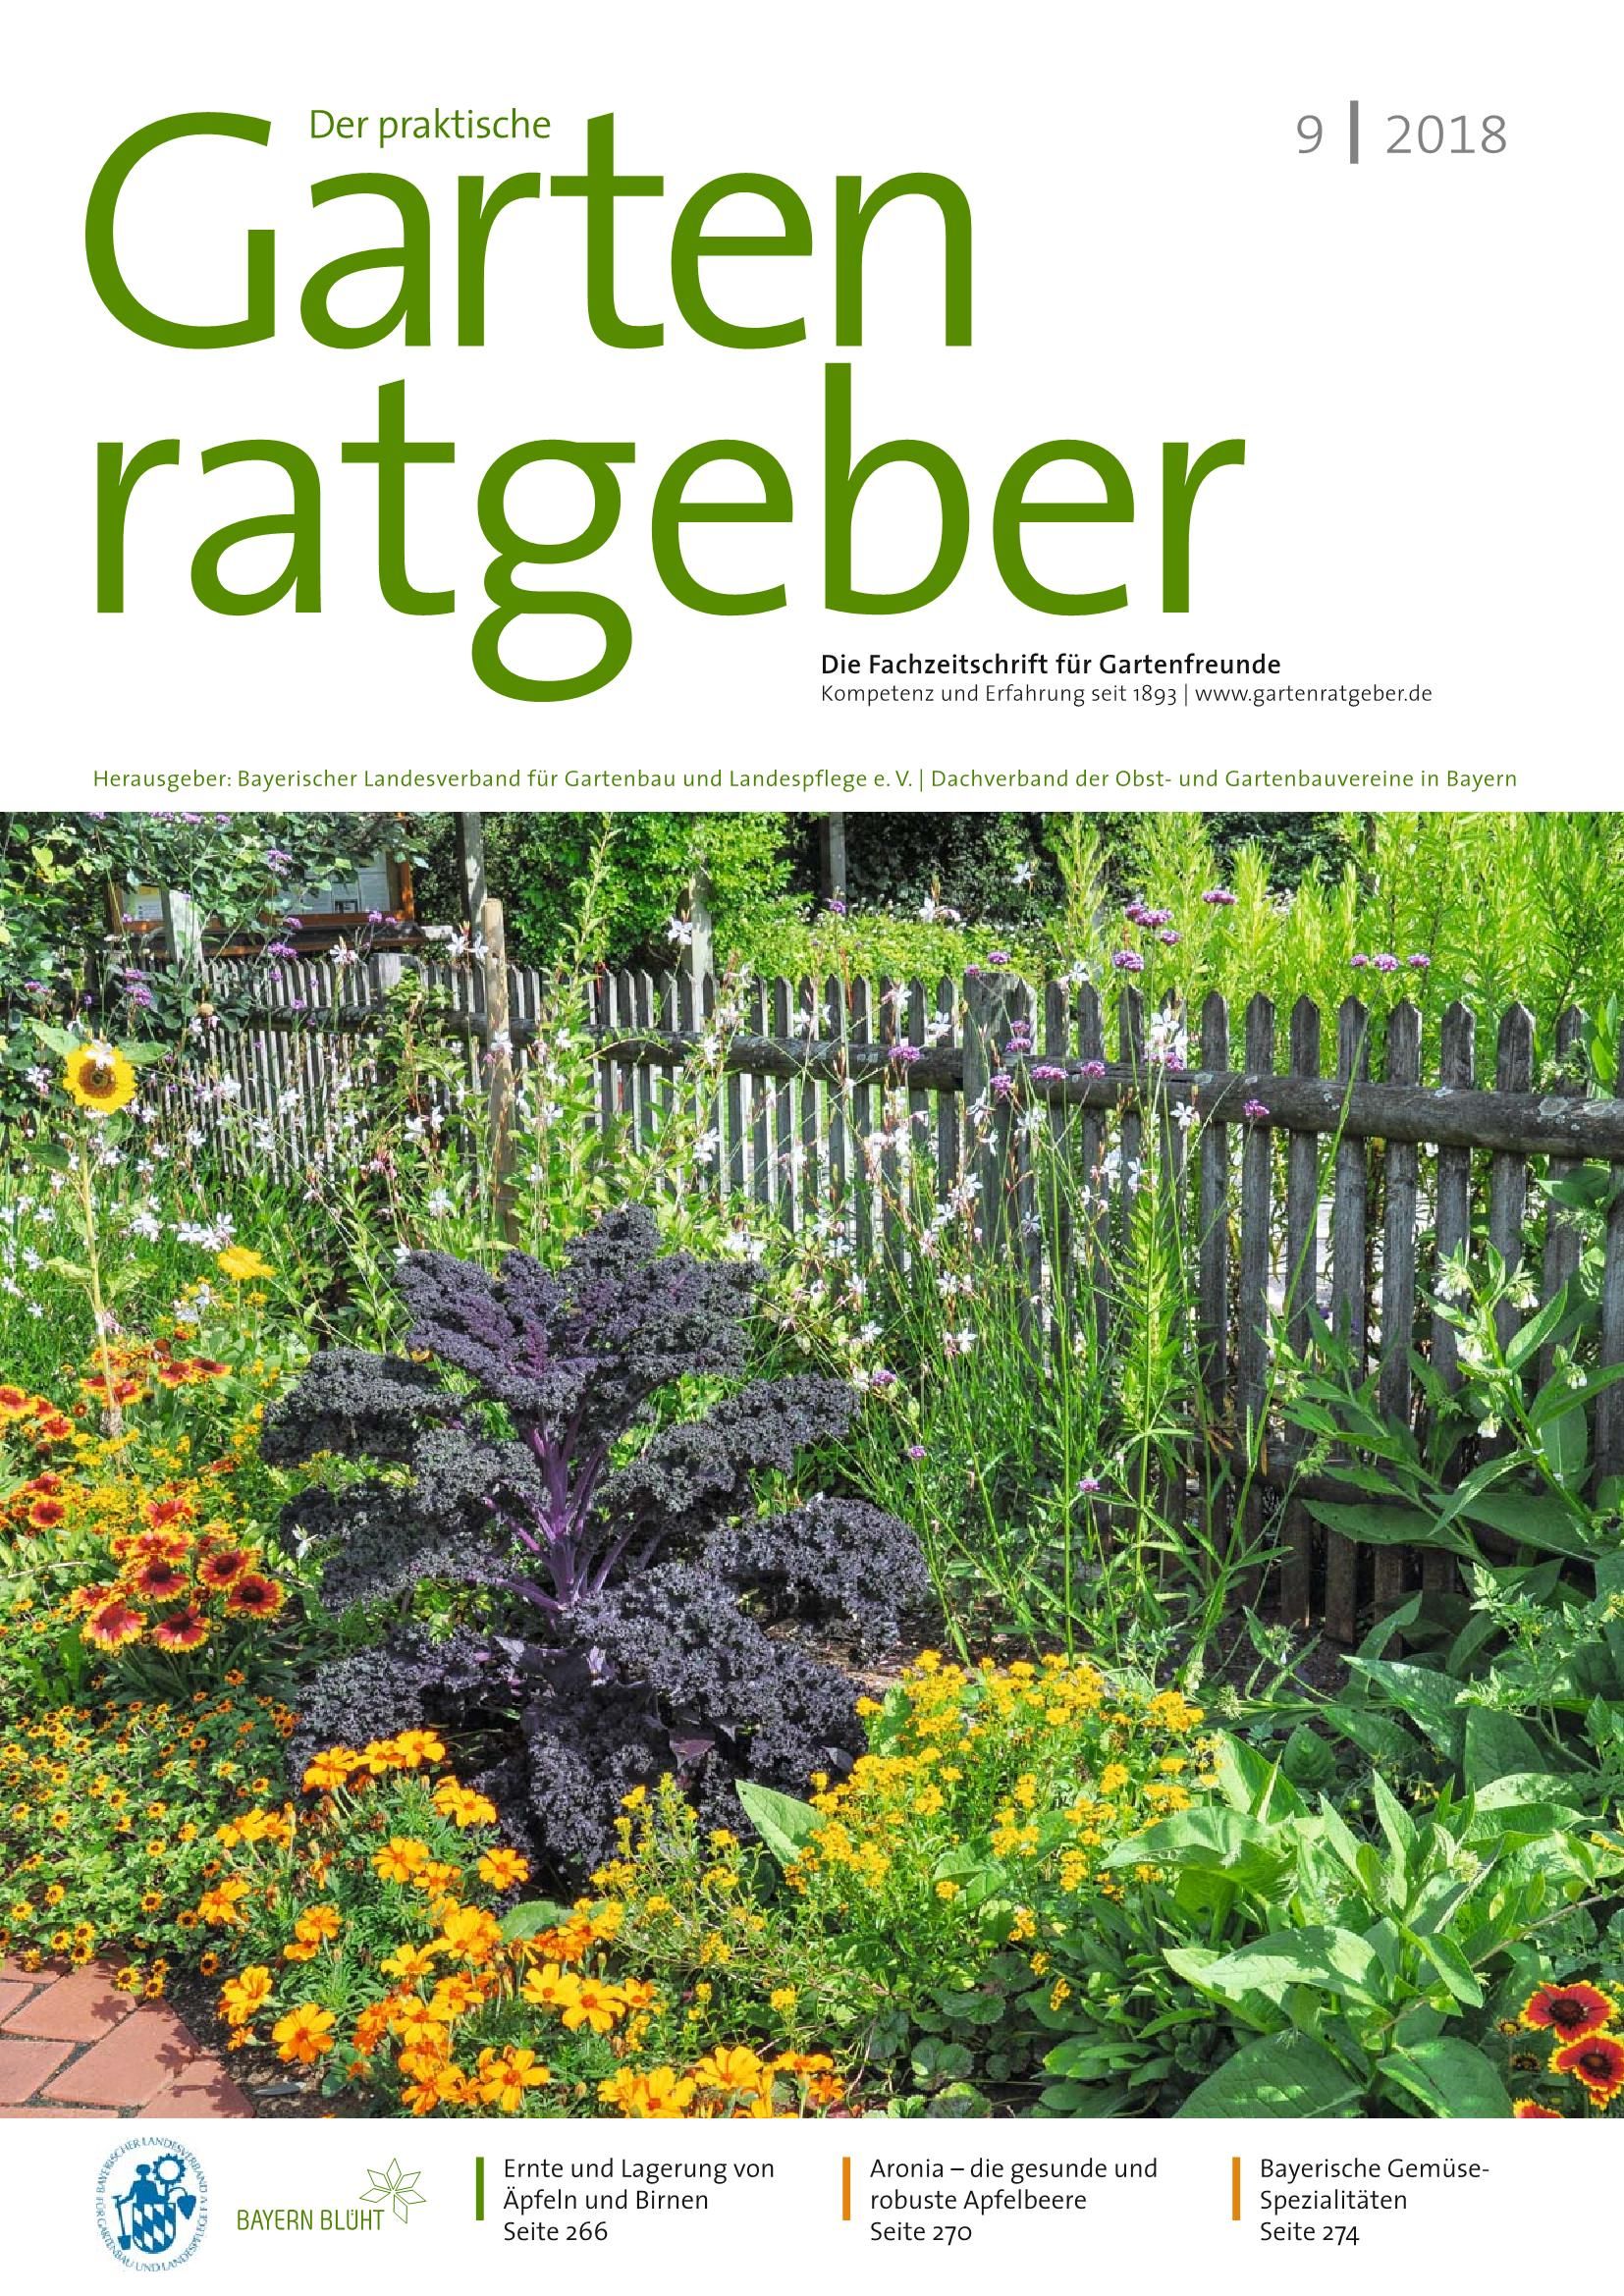 Naturnaher Garten Pflegeleicht Anlegen Luxus Der Praktische Gartenratgeber 09 2018 Pages 1 18 Text